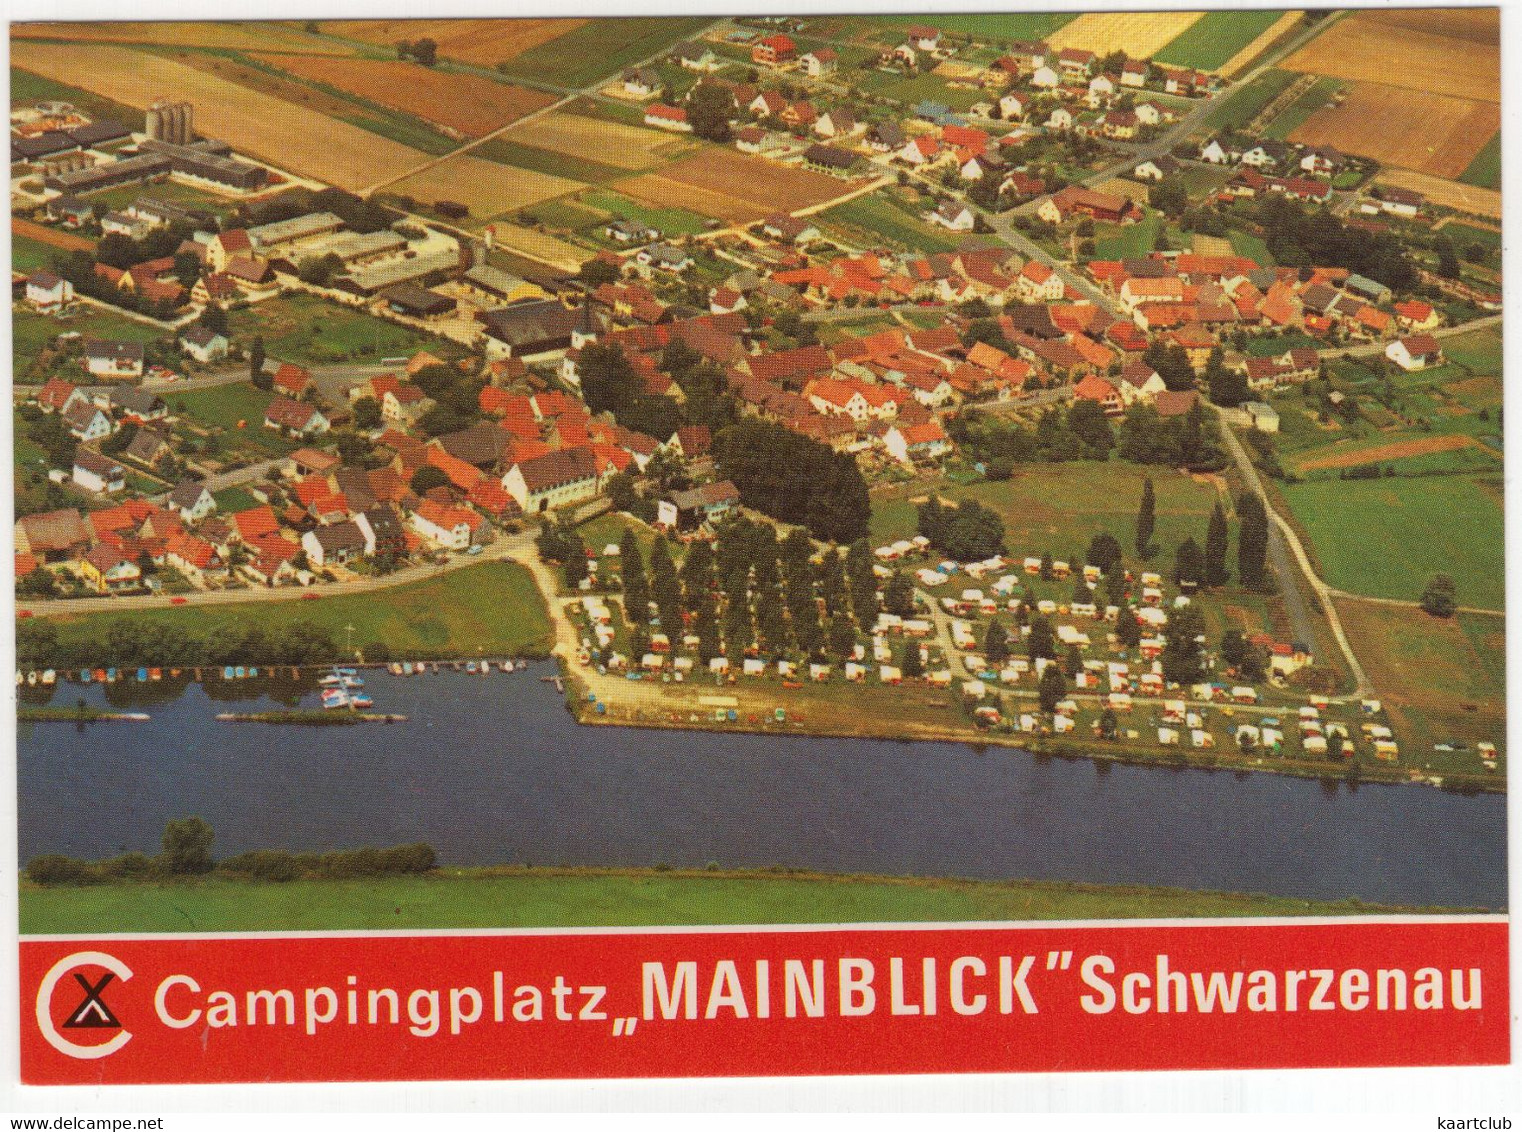 Schwarzenau - Campingplatz 'Mainblick' Am Main - (D.) - Aerofot-Flugbild - Luftaufnahme Aero-Monofot - Kitzingen